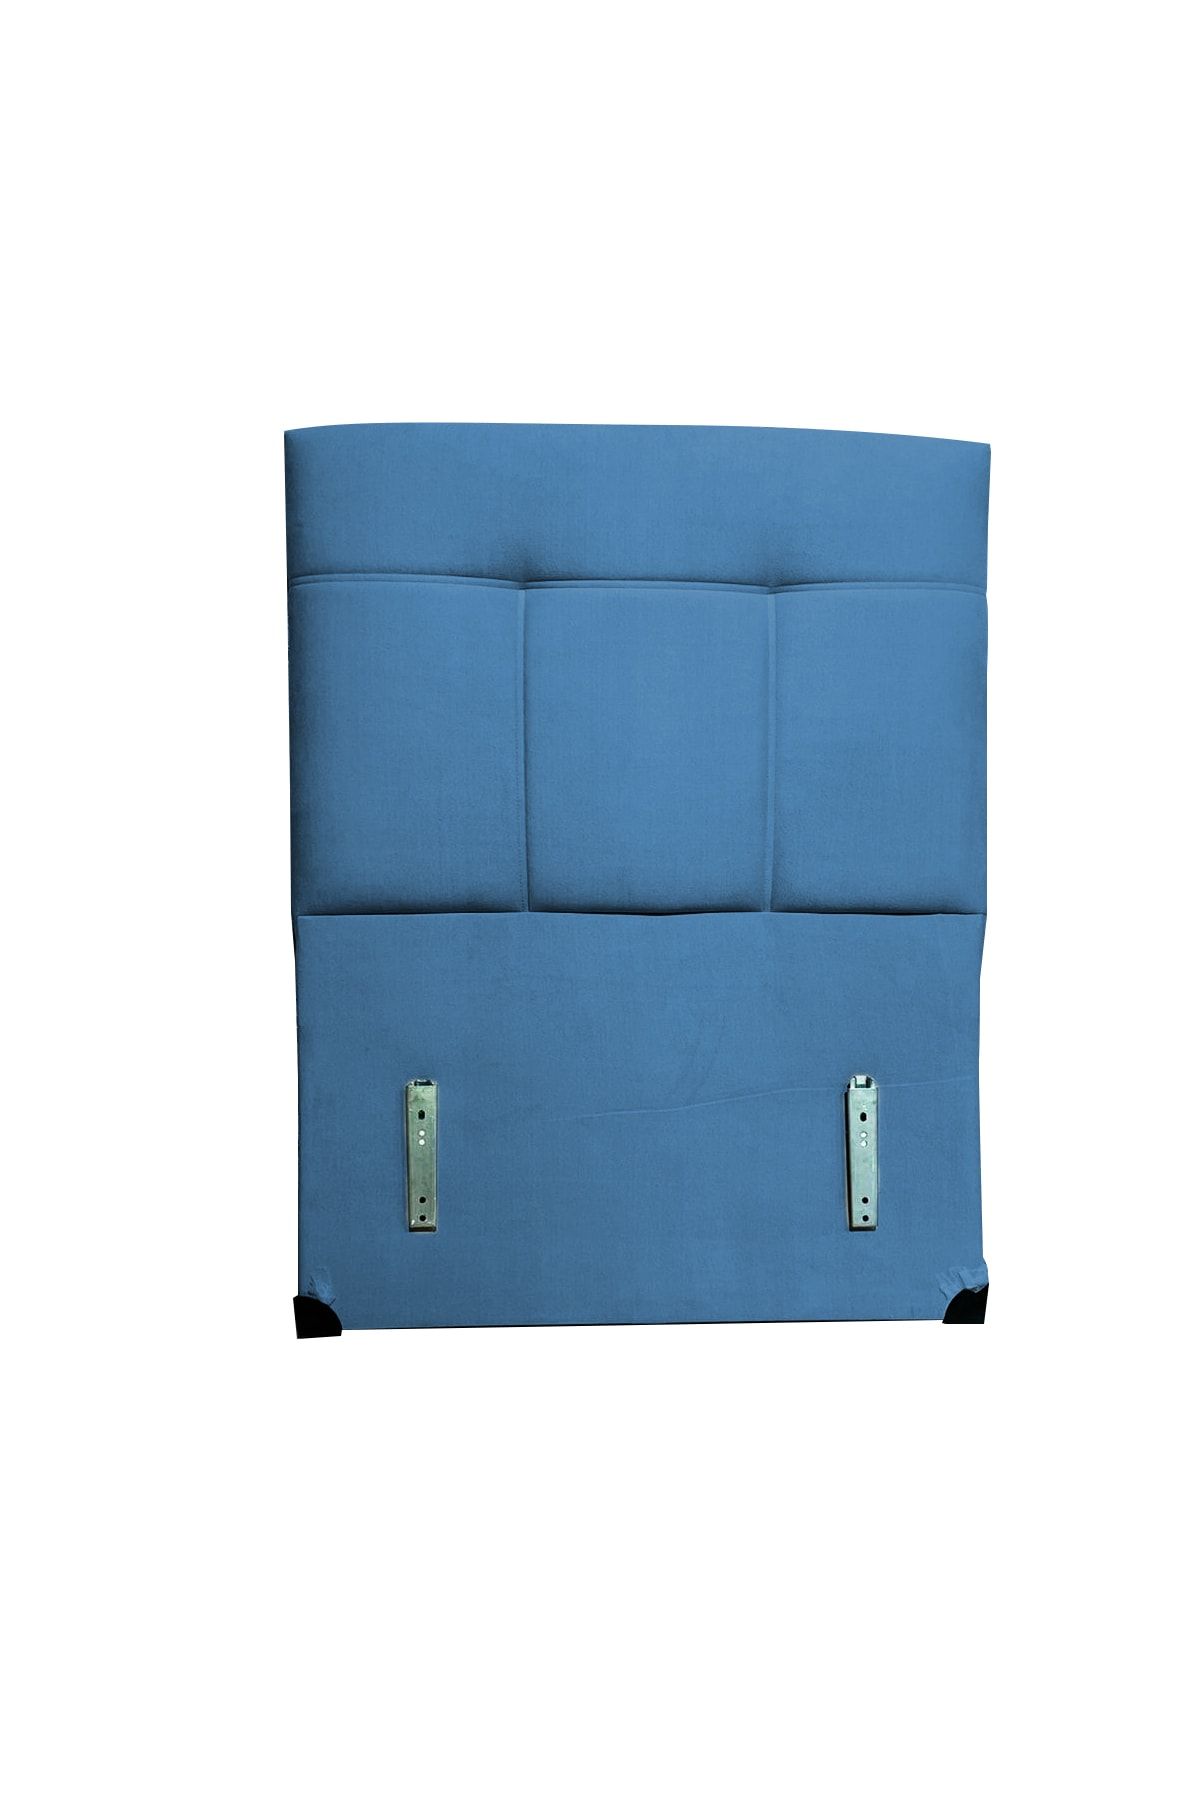 ipek mobilya Manolya Başlık Tek Kişilik ( Mavi )